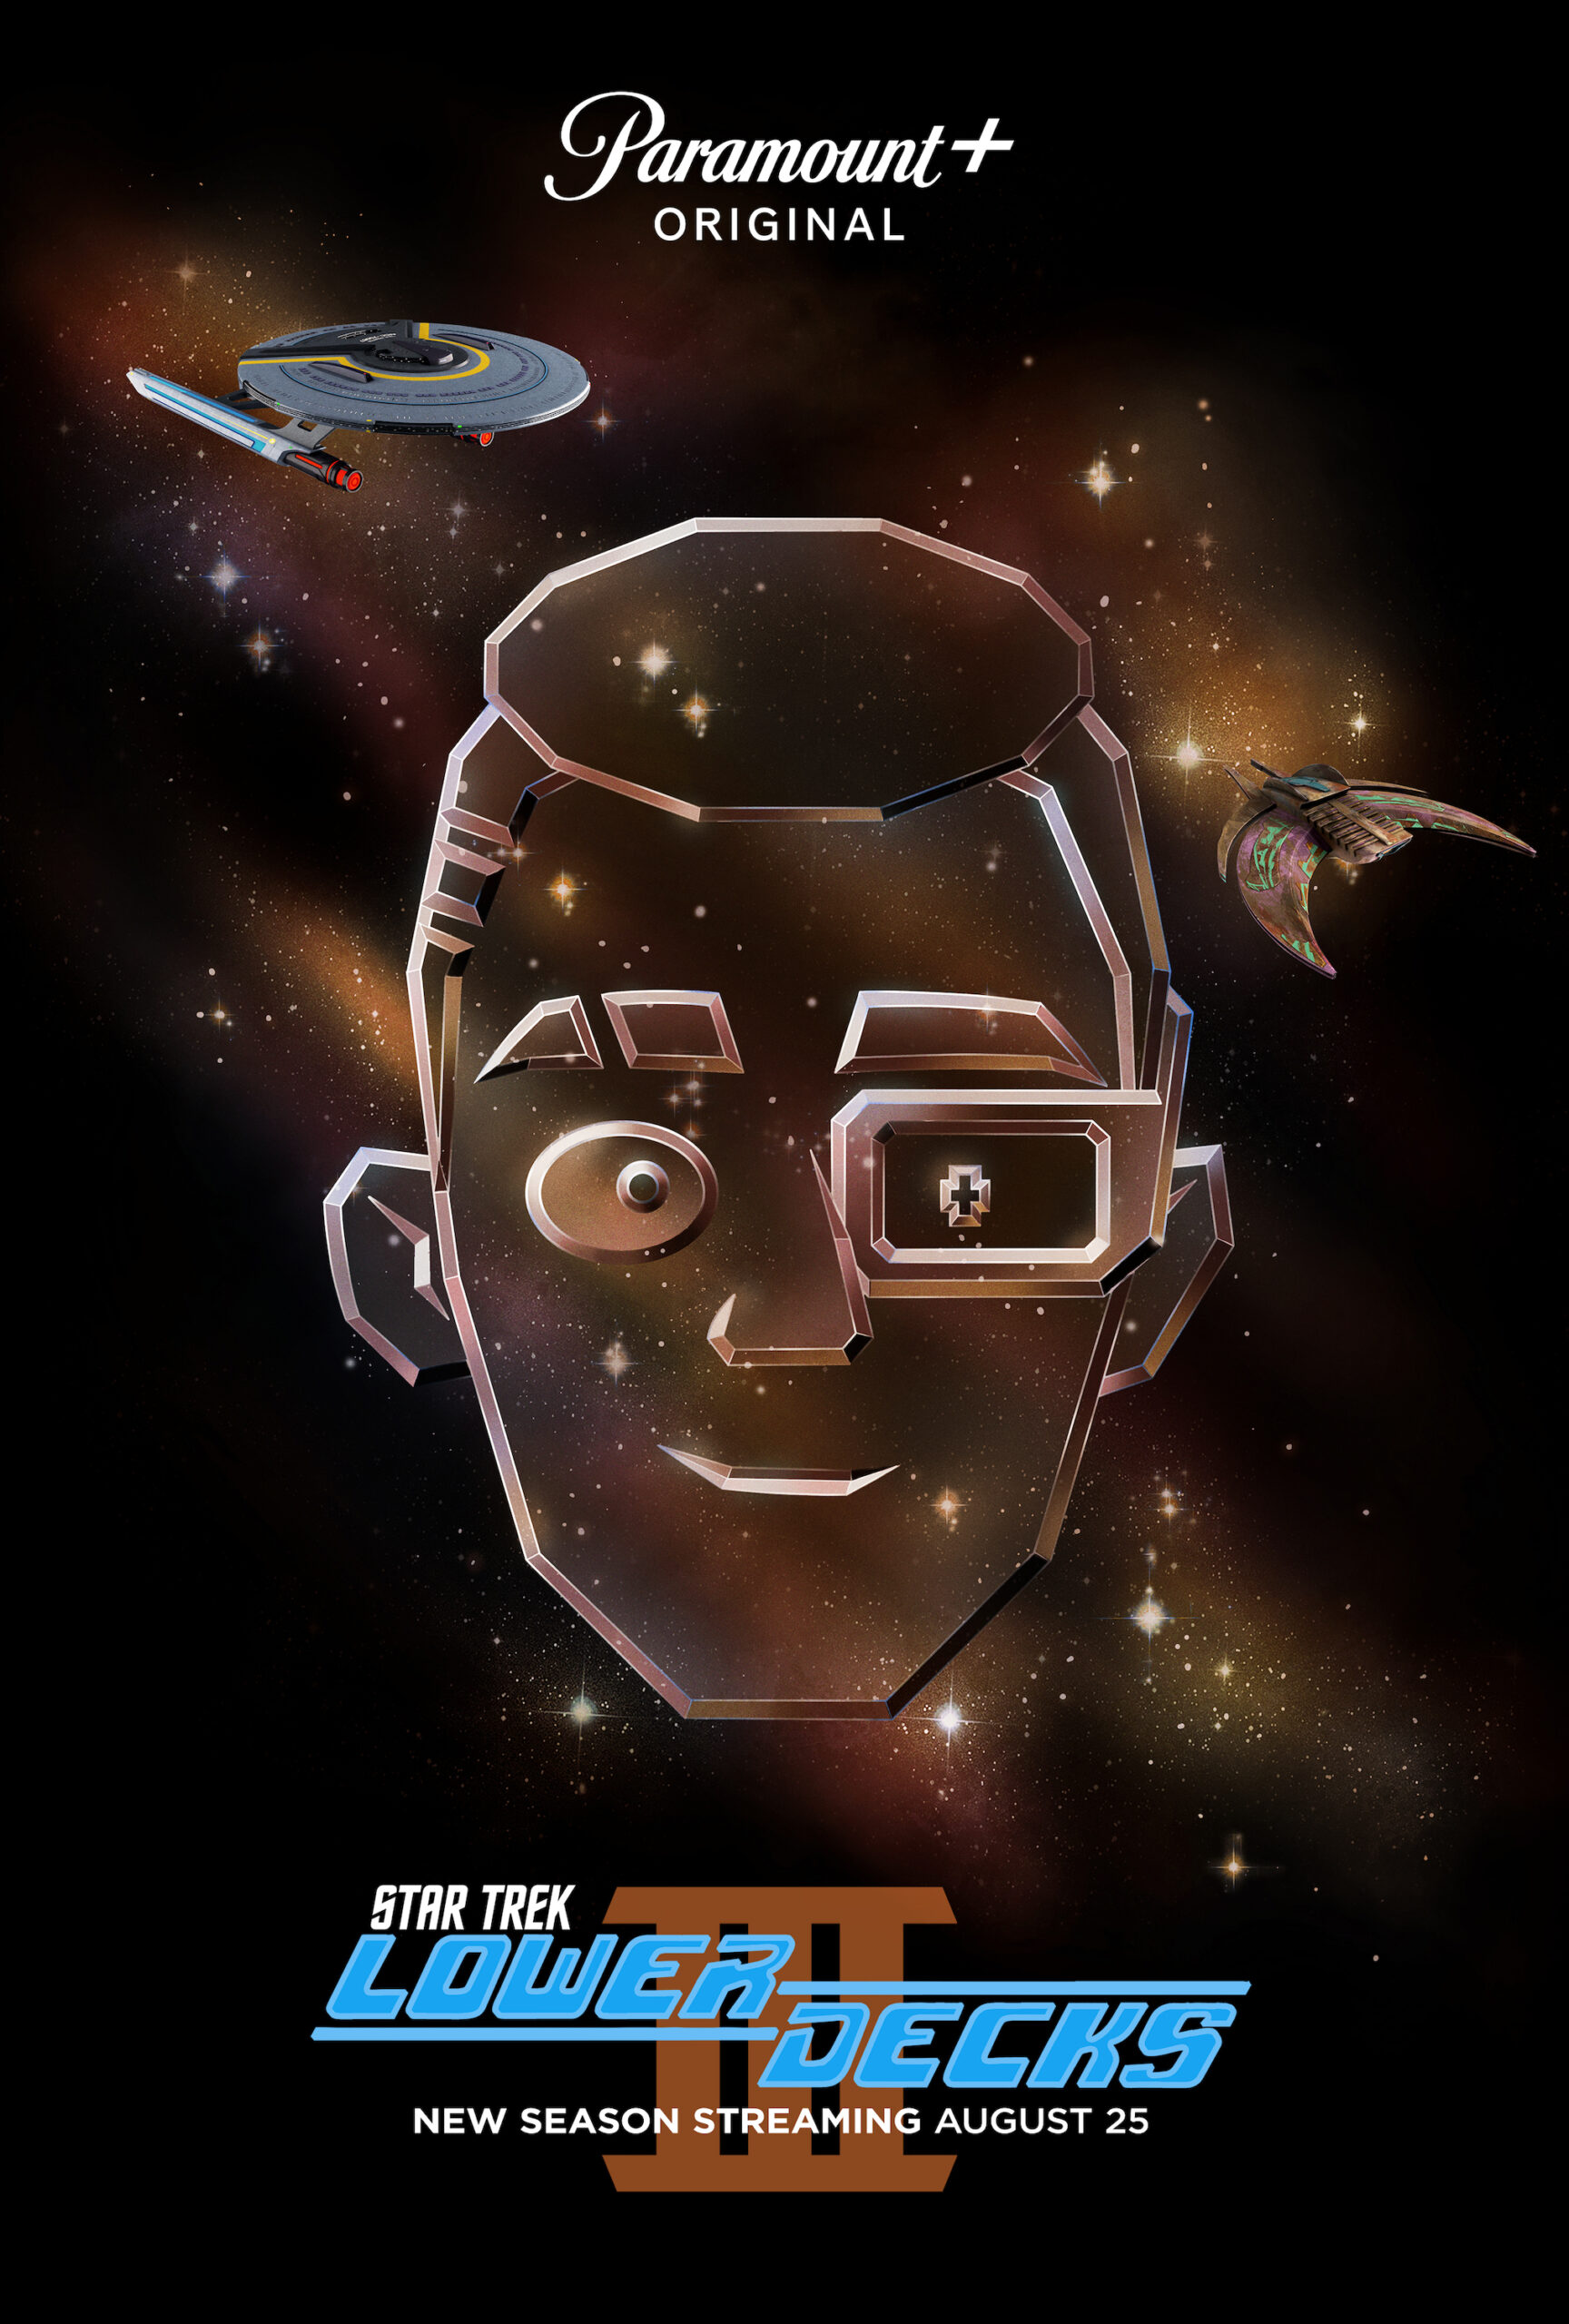 Ensign Rutherford, voiced by Eugene Cordero of Star Trek: Lower Decks